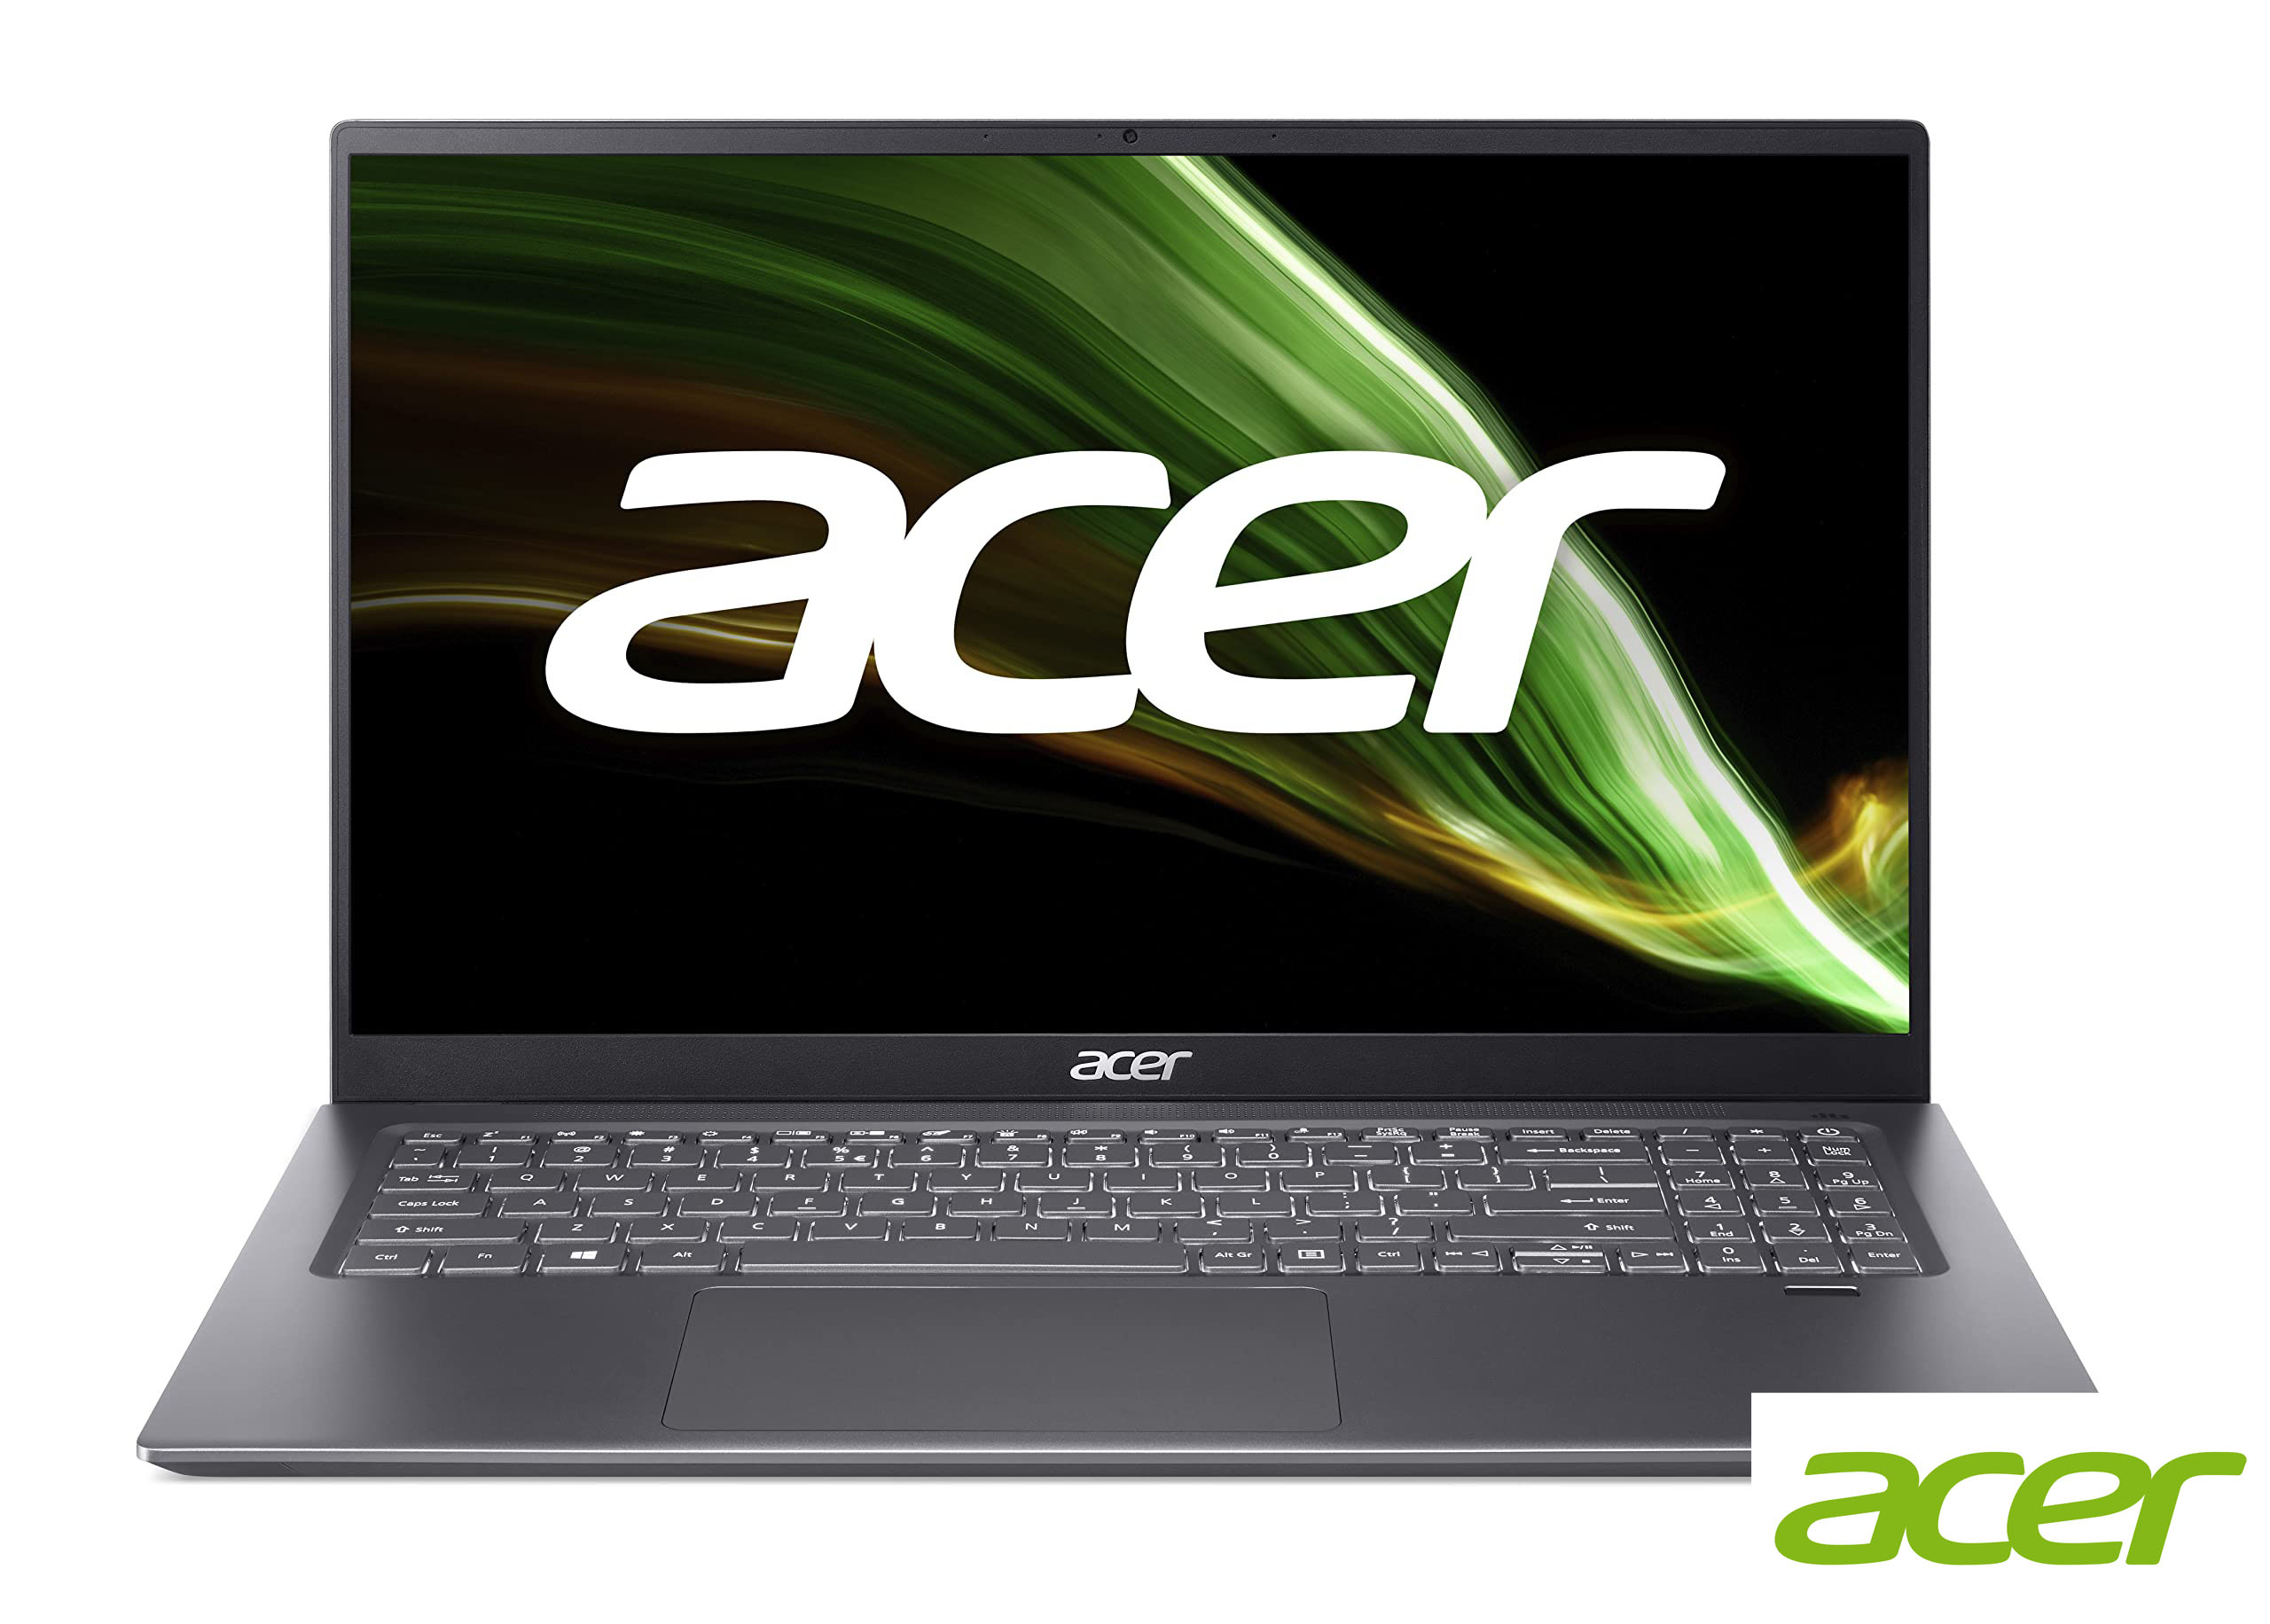 Hdd Для Ноутбука Acer Aspire Купить